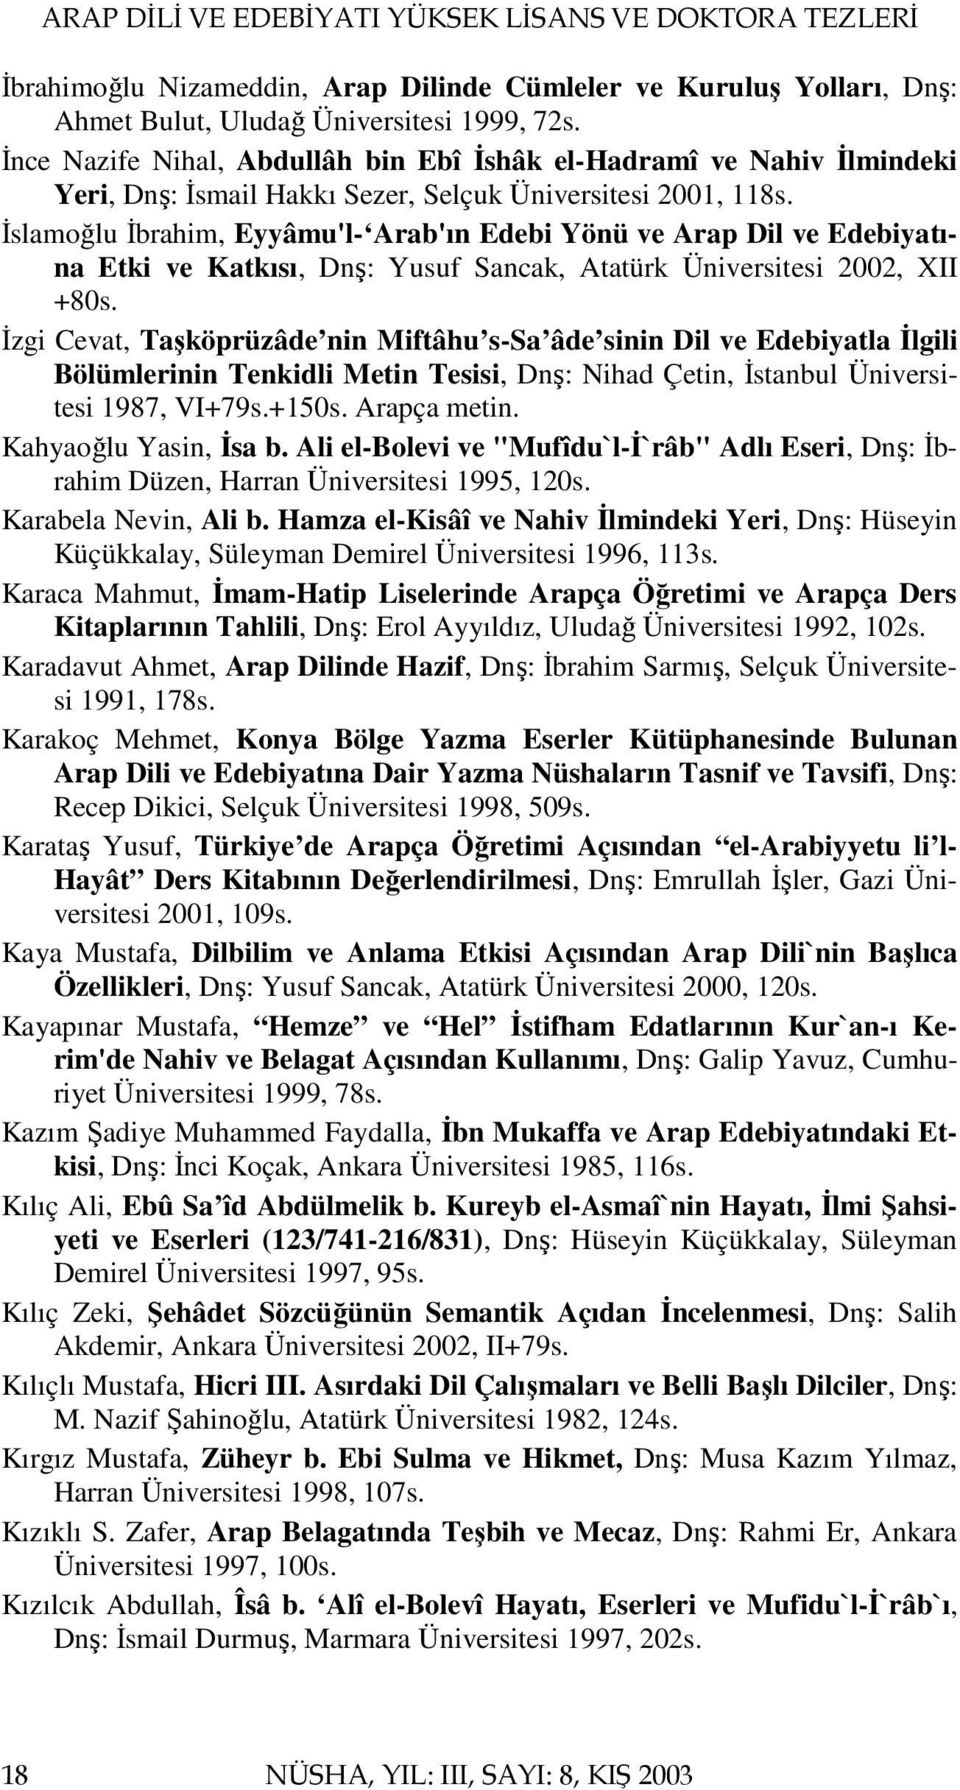 İslamoğlu İbrahim, Eyyâmu'l- Arab'ın Edebi Yönü ve Arap Dil ve Edebiyatına Etki ve Katkısı, Dnş: Yusuf Sancak, Atatürk Üniversitesi 2002, XII +80s.